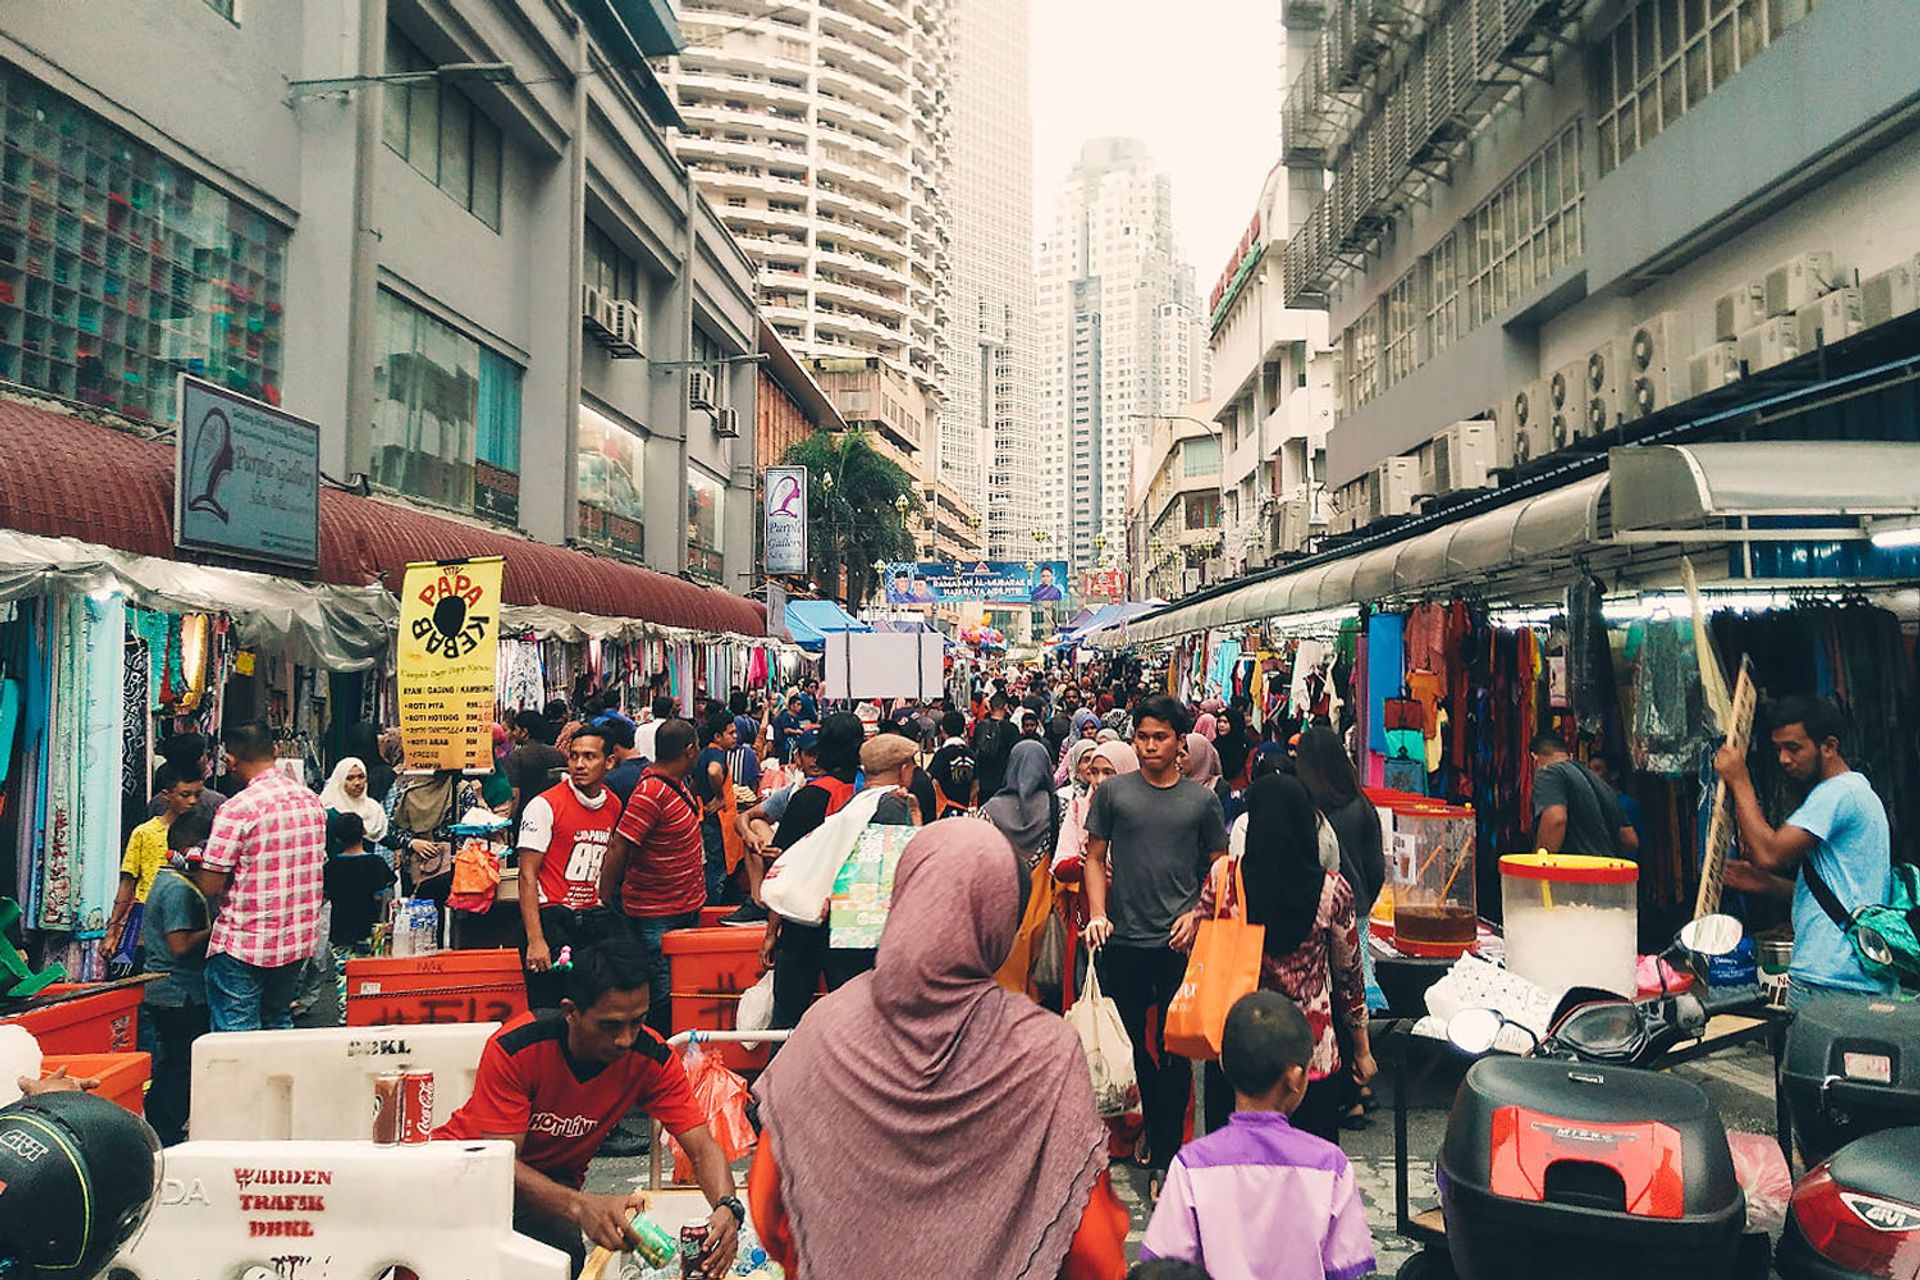   Pasar Malam Jalan Tuanku Abdul Rahman